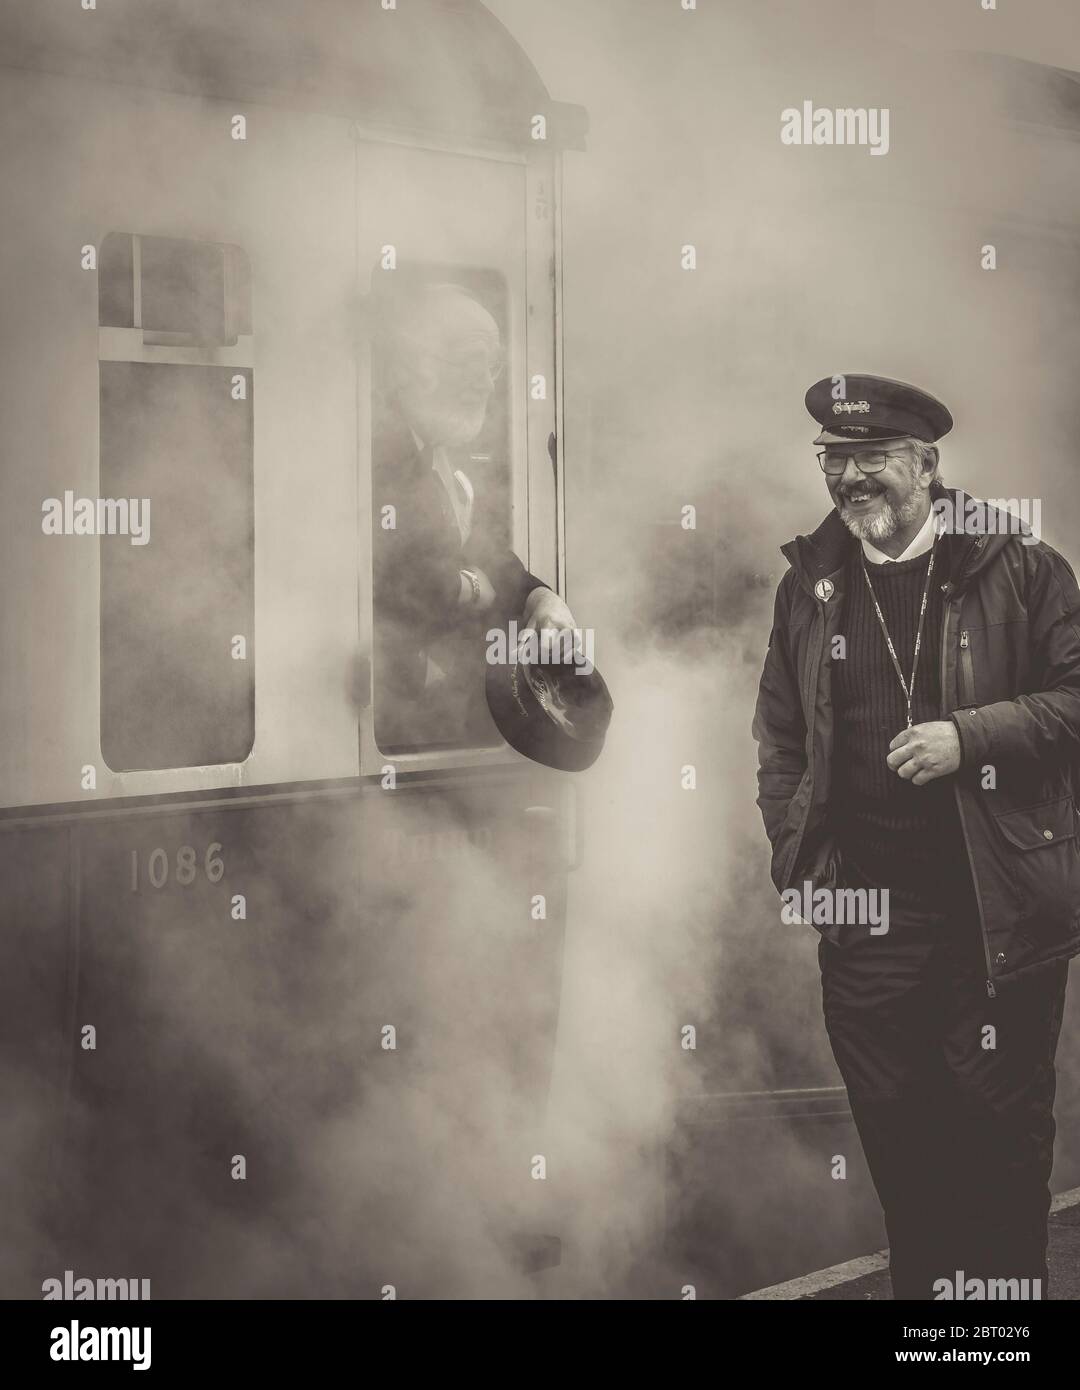 Vista monocromatica di un sorridente lavoratore ferroviario a vapore sulla piattaforma che chiacchiera con l'ispettore dei biglietti attraverso la finestra di lasciare il treno vintage del Regno Unito. Vapore pieno davanti! Foto Stock